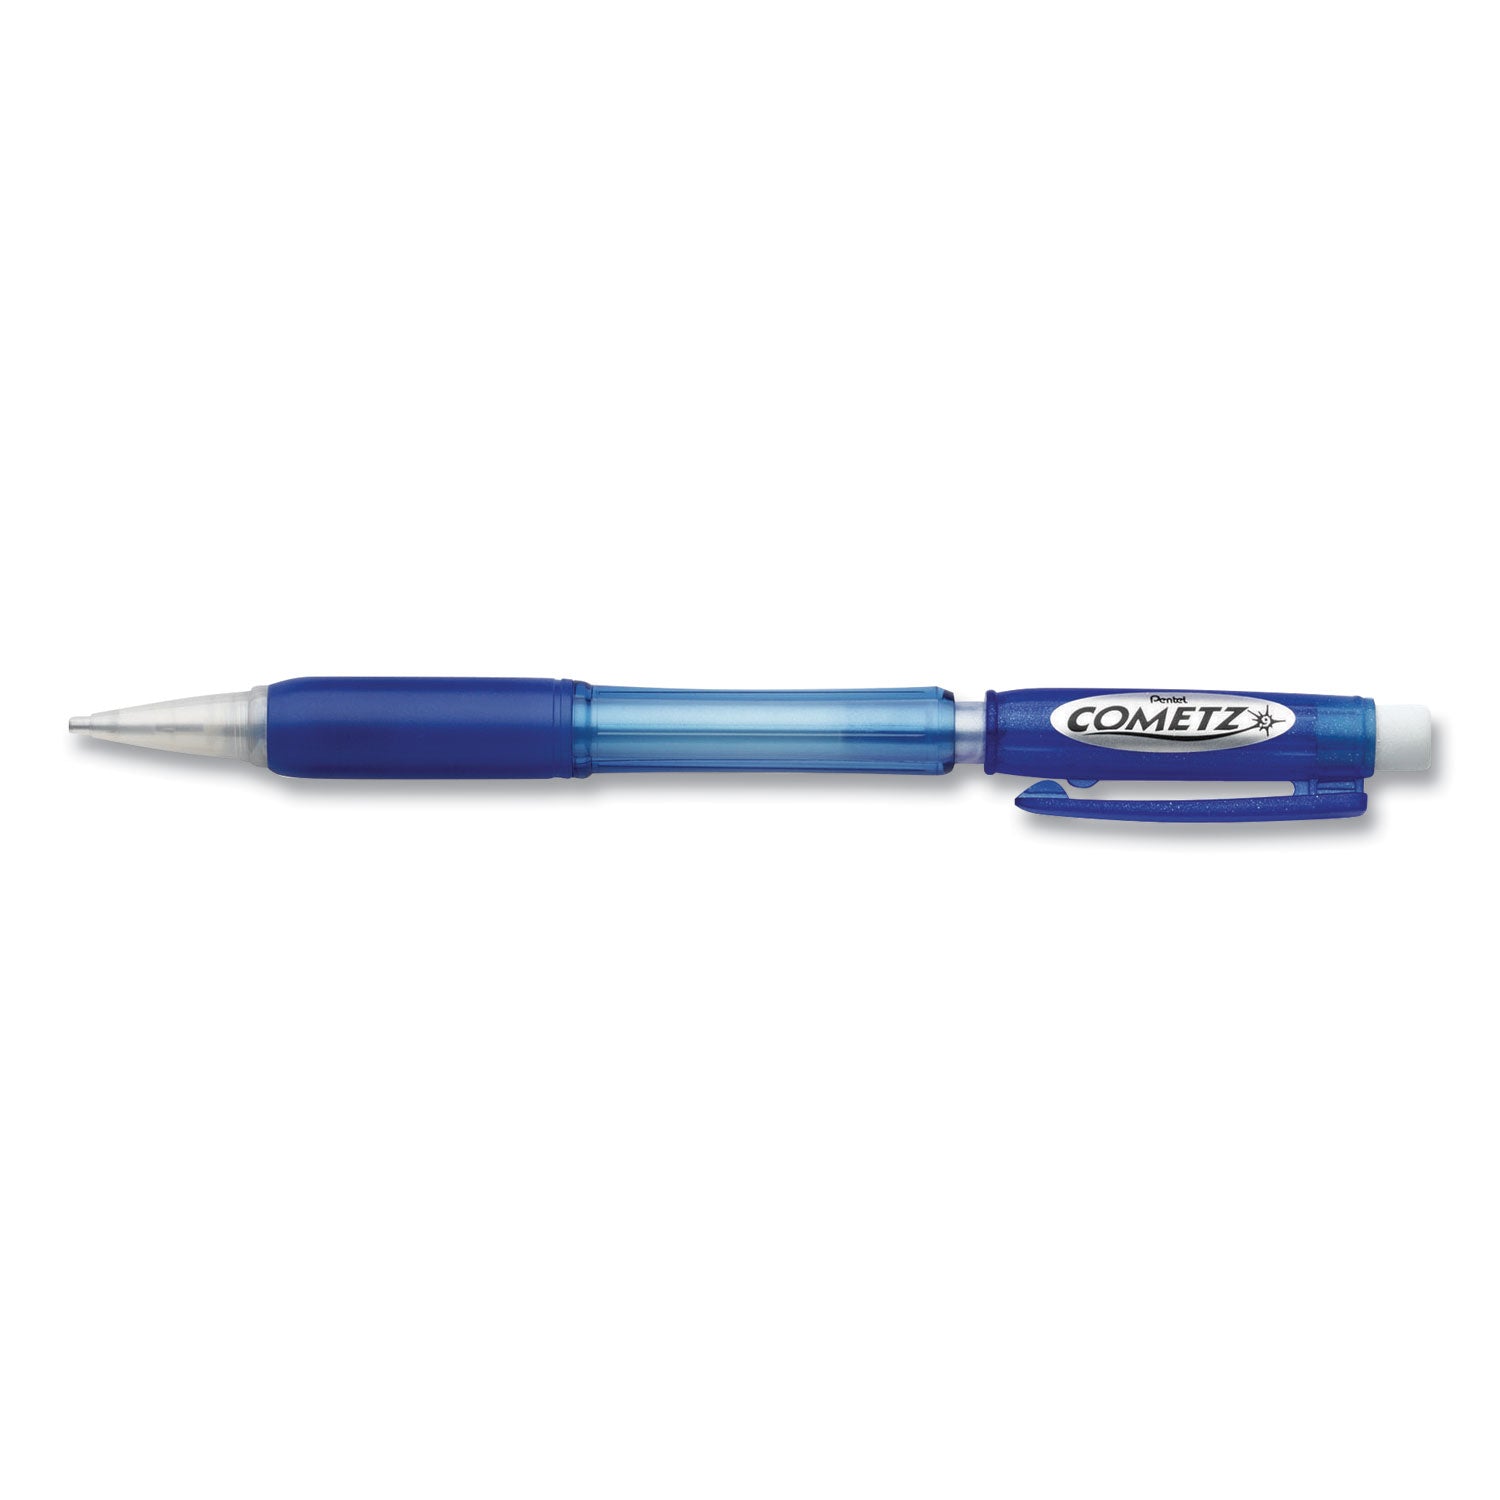 Cometz Mechanical Pencil, 0.9 mm, HB (#2), Black Lead, Blue Barrel, Dozen - 